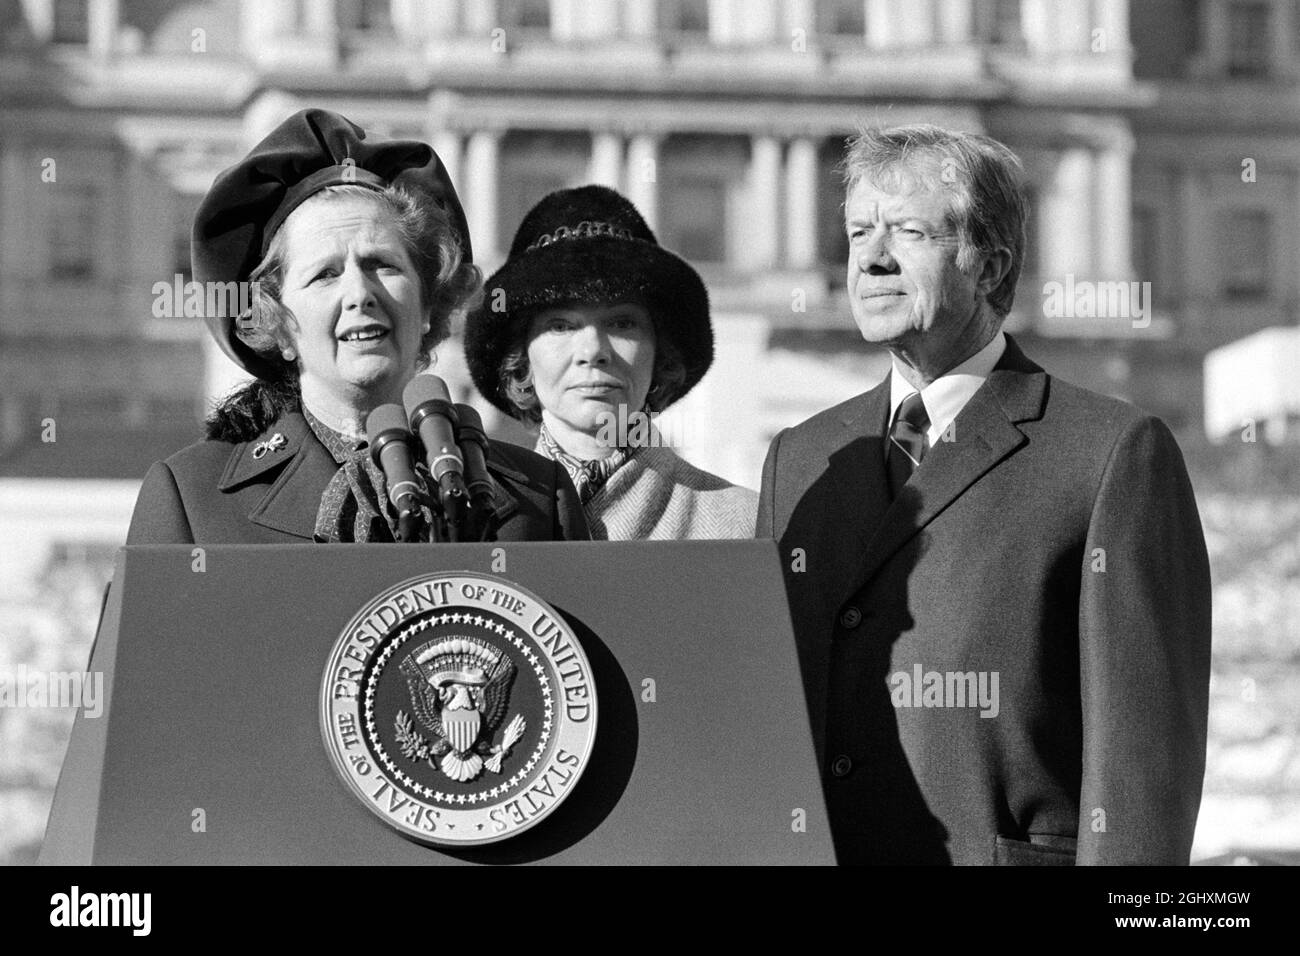 Il primo ministro britannico Margaret Thatcher che parla al leggio accanto a U.S. First Lady Rosalynn carter e il presidente degli Stati Uniti Jimmy carter, Washington, DC, USA, Marion S. Trikosko, Dicembre 17, 1979 Foto Stock